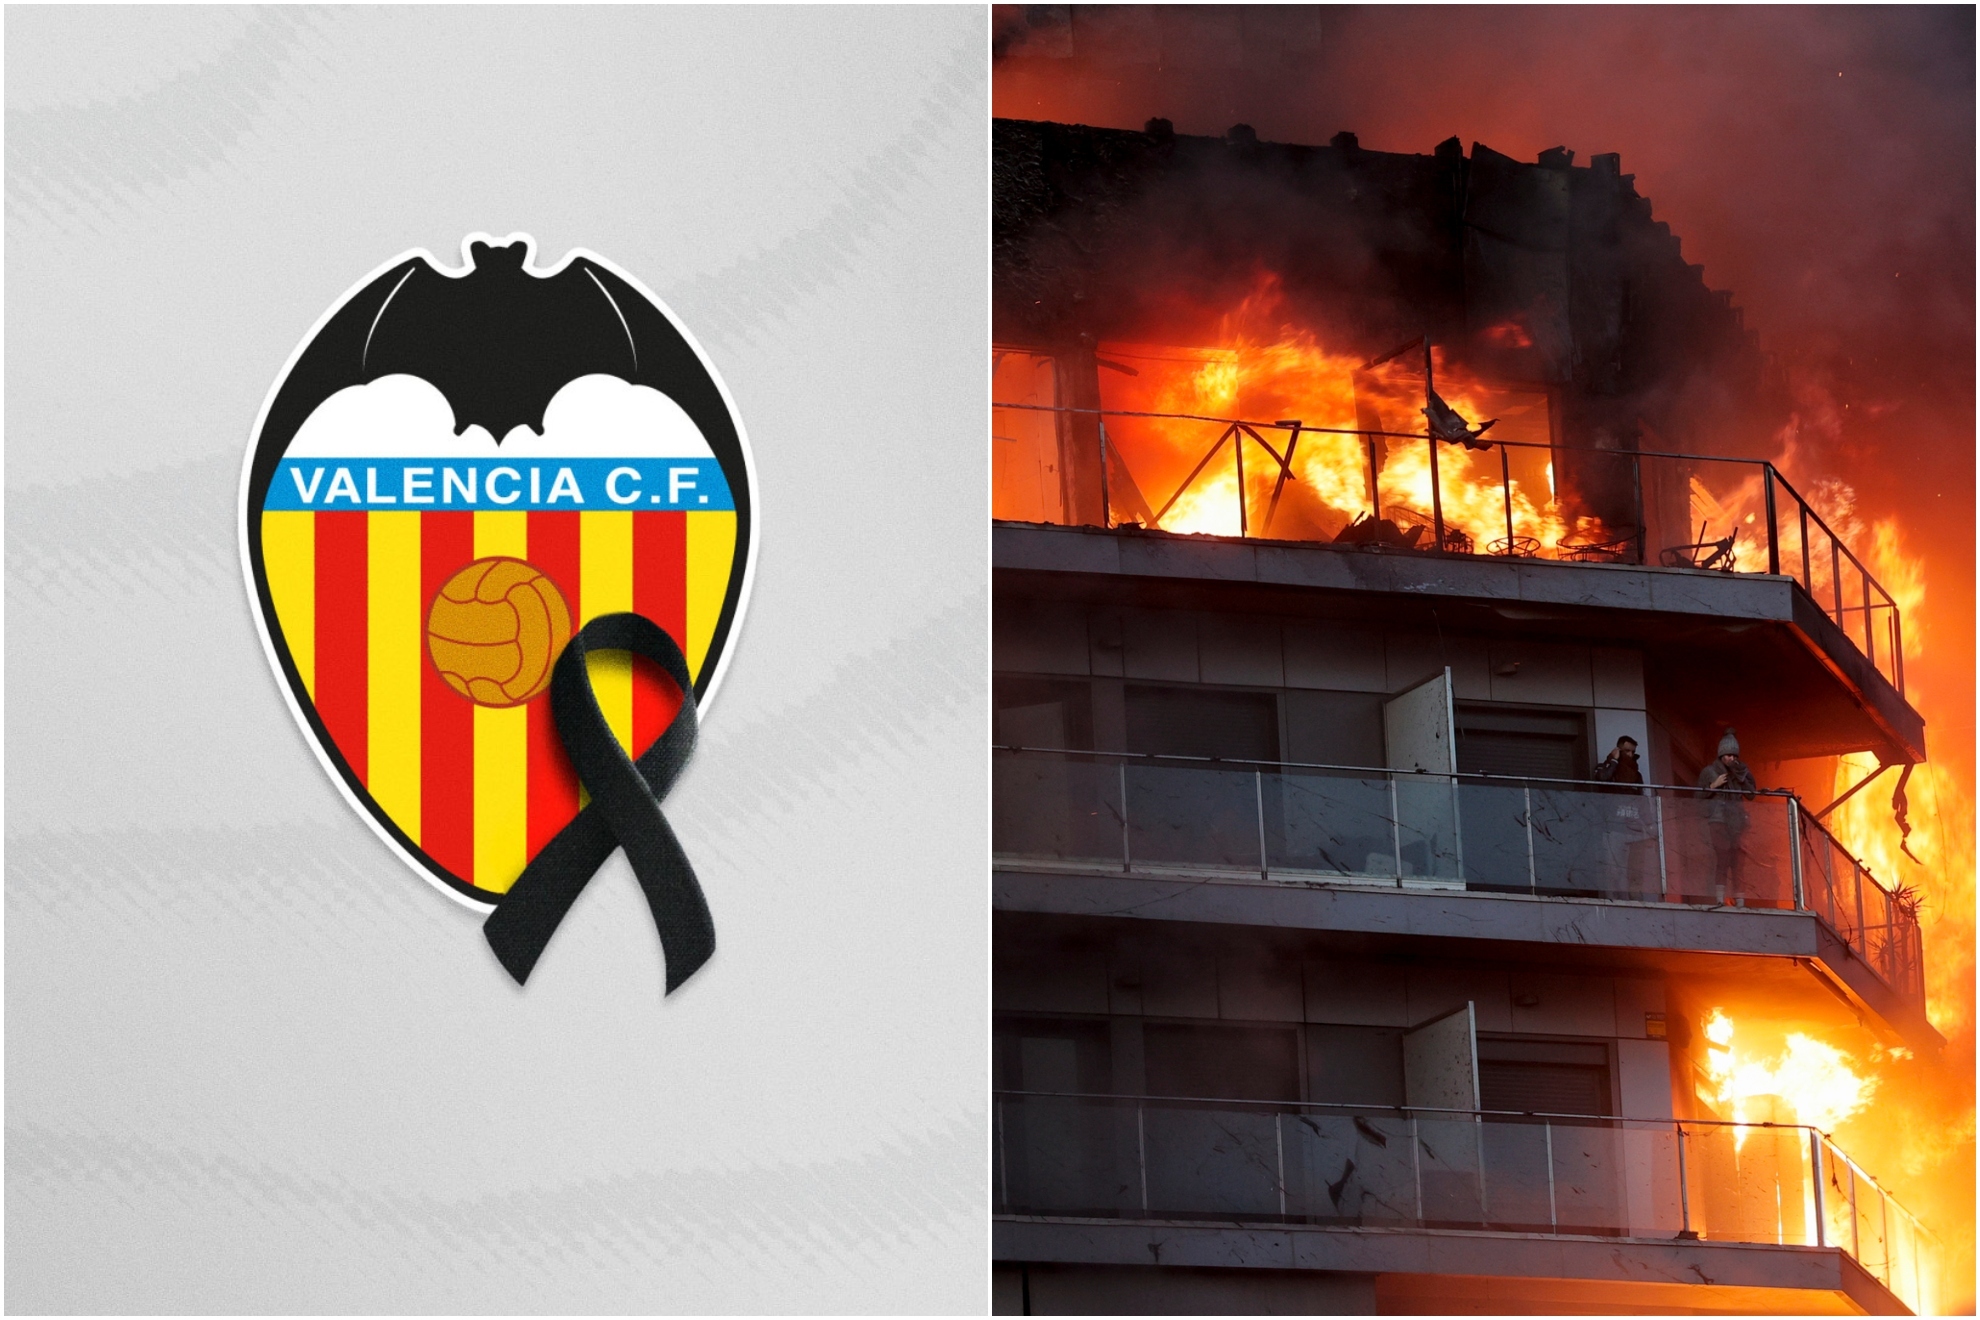 El Valencia CF ha anunciado una rueda de prensa conjunta donde, previsiblemente, anunciará el aplazamiento del partido por el incendio